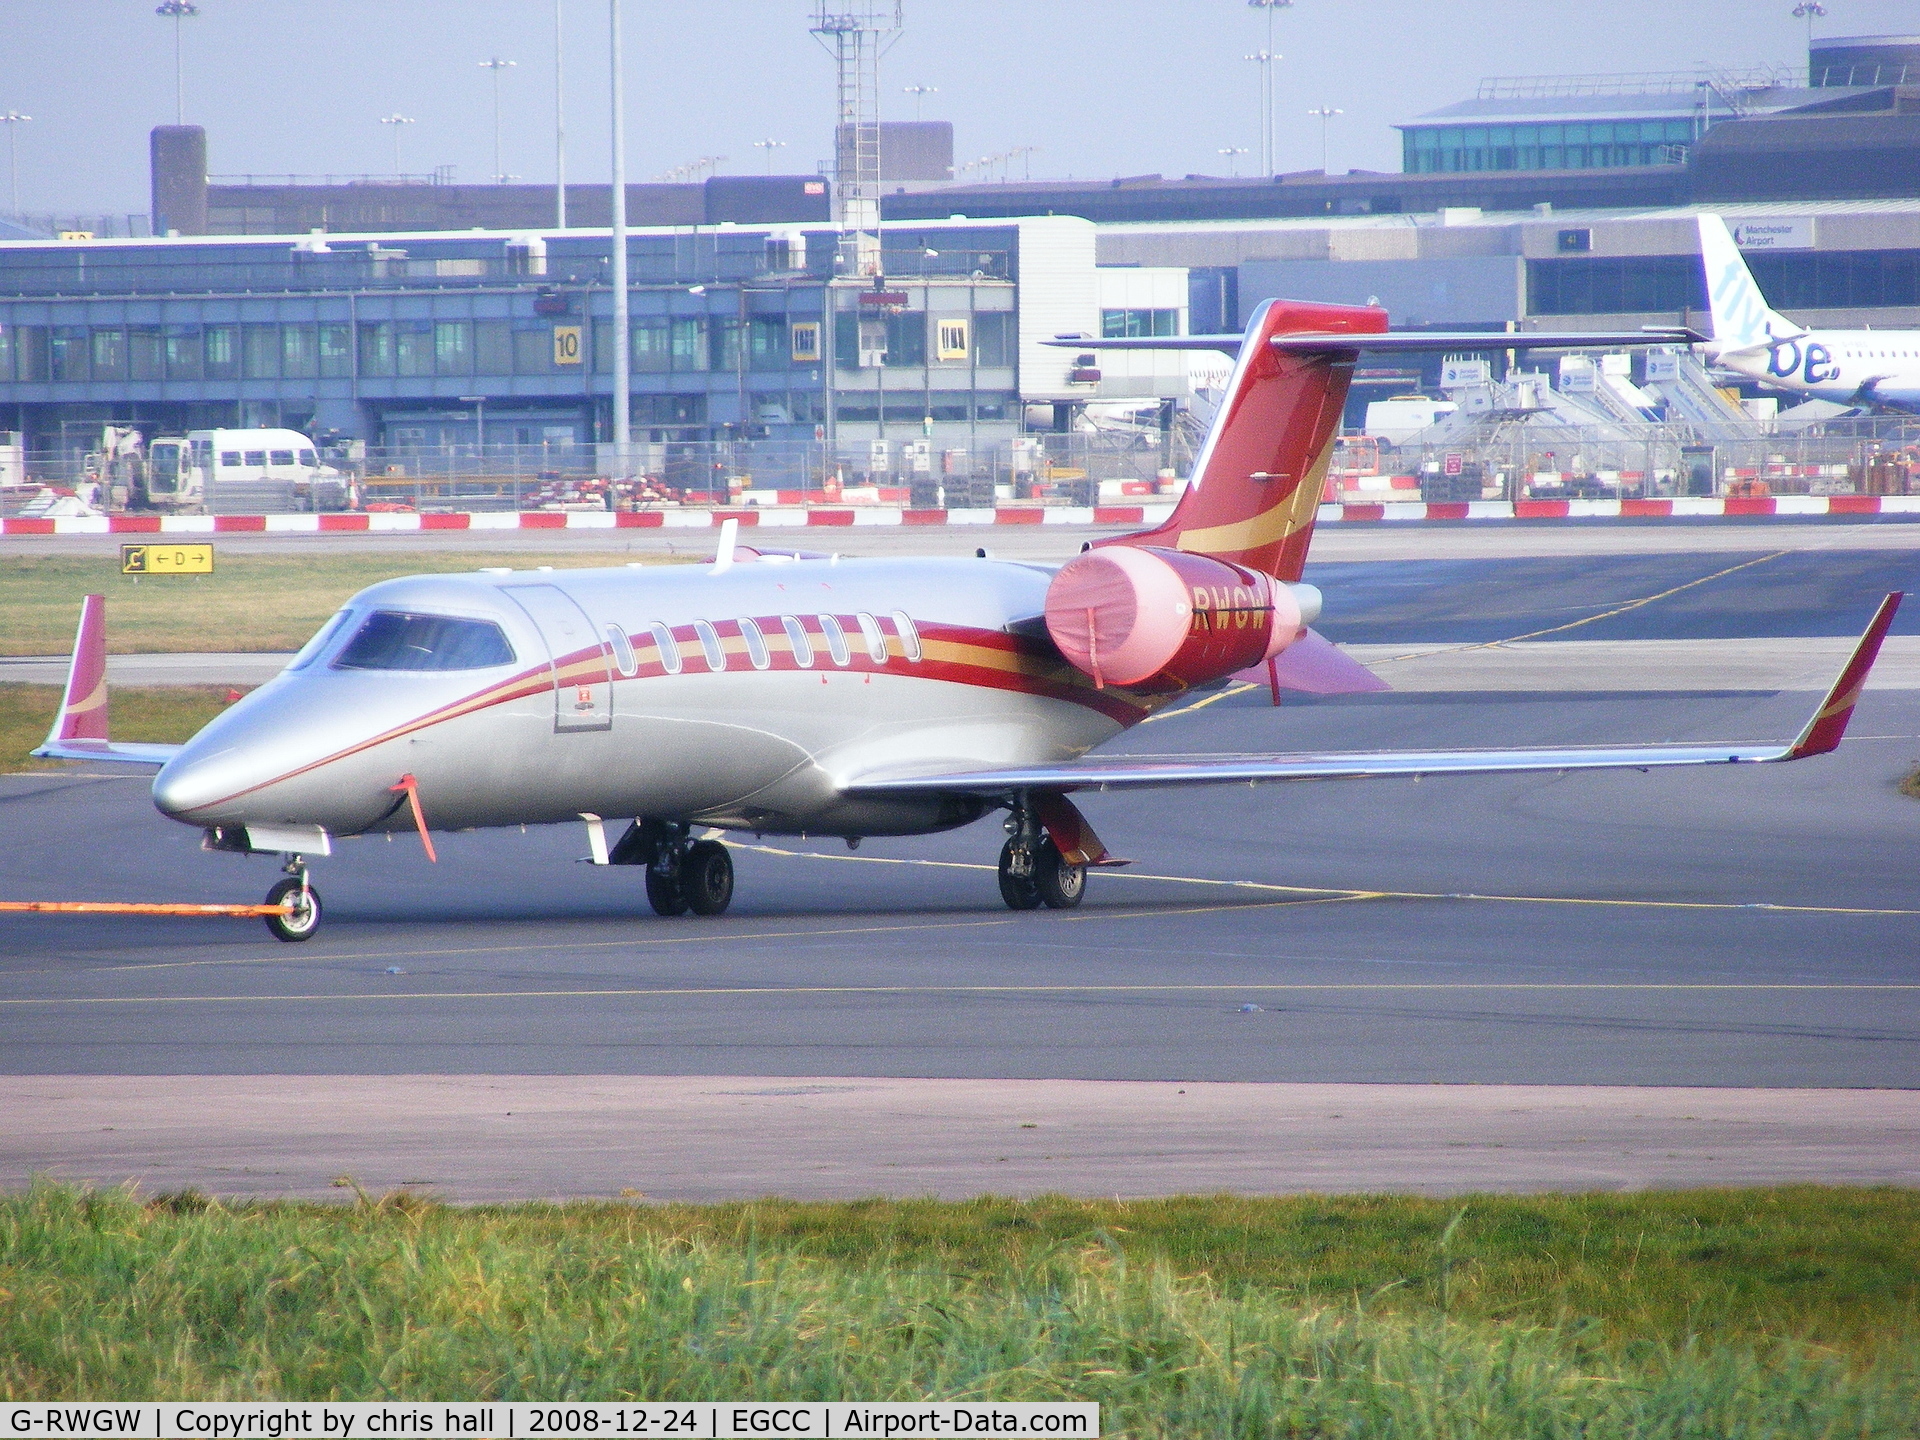 G-RWGW, 2002 Learjet 45 C/N 45-213, Woodlands Air; Previous ID: G-MUTD